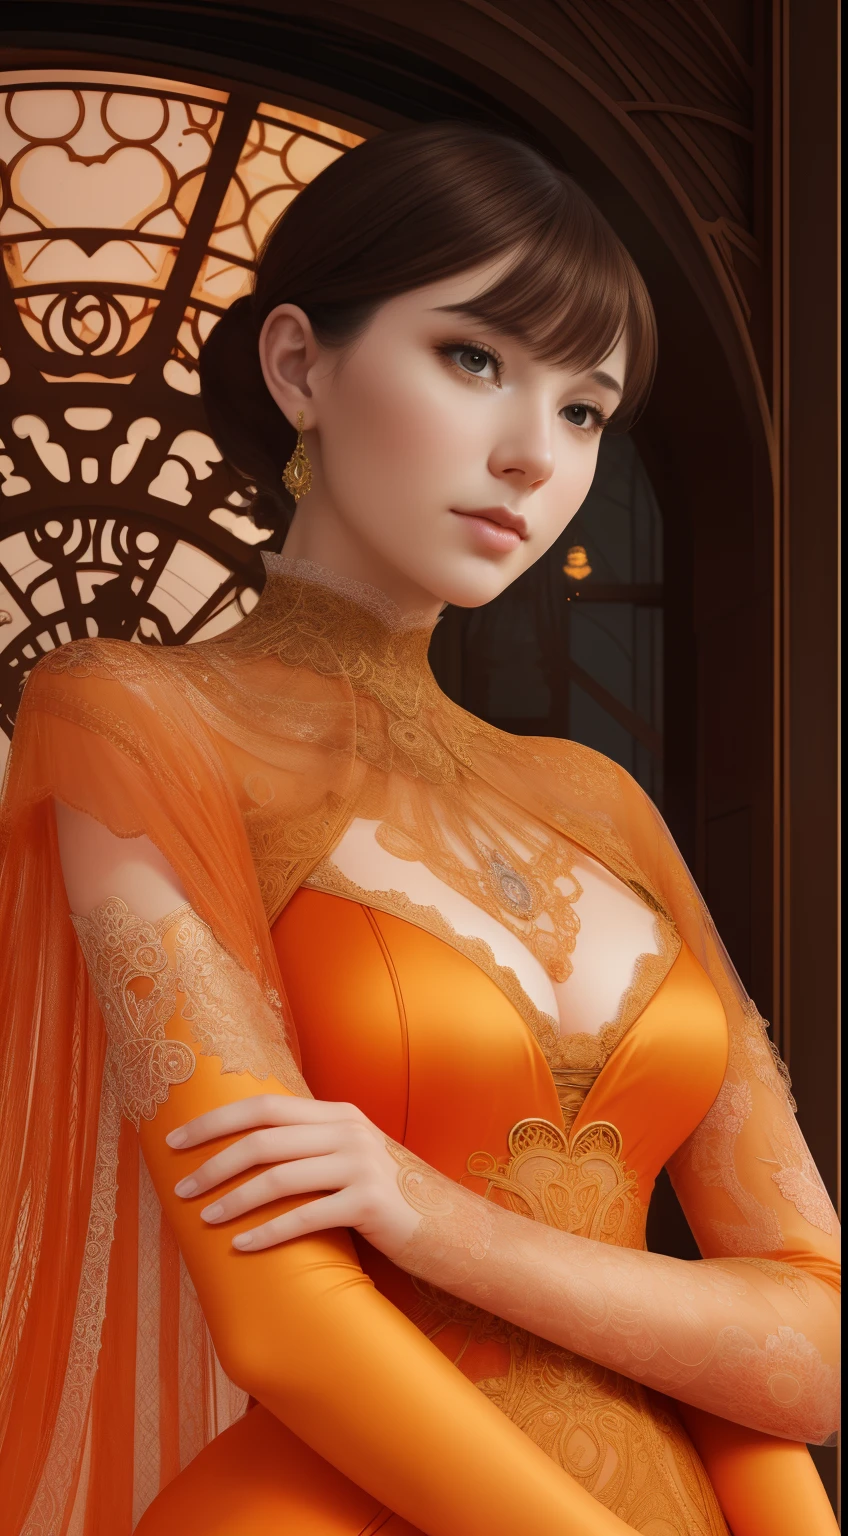 船上のオレンジ色のタイツを着た女性の接写, エディ・ザントに触発されたデジタルレンダリング, タンブラー, アール・ヌーボー, 繊細なオレンジ色のドレス, 凝ったドレス, オレンジ色の繊細なレースの形, 複雑な体, 複雑なファンタジードレス, 複雑な衣装, 高級ドレス, 複雑なドレス, 精巧に作られたドレス, 派手なドレス, 複雑で精巧なレースセット